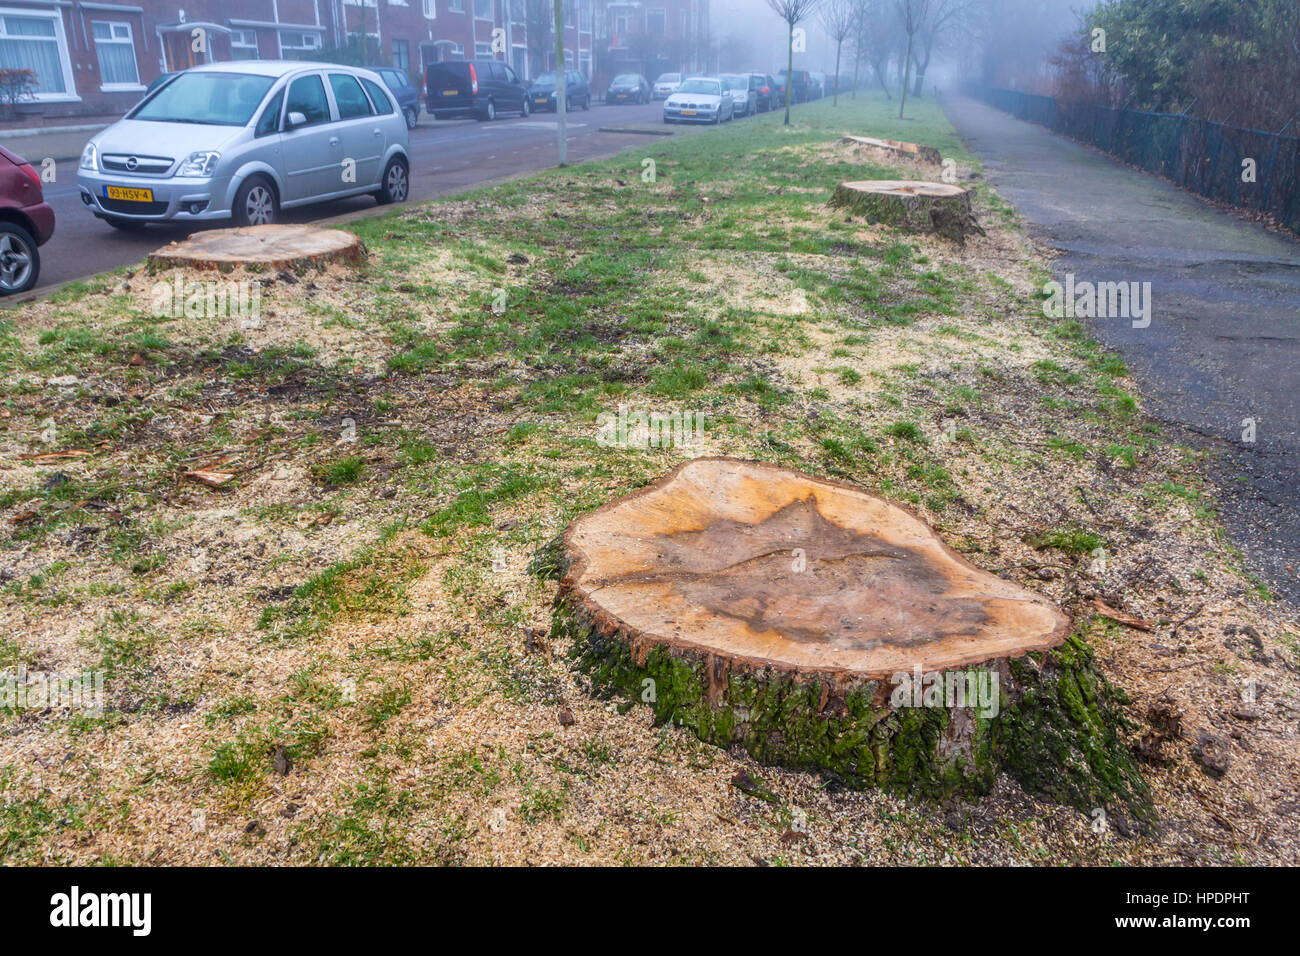 La Haye, Pays-Bas - le 18 février 2017 : les arbres malades abattus Banque D'Images